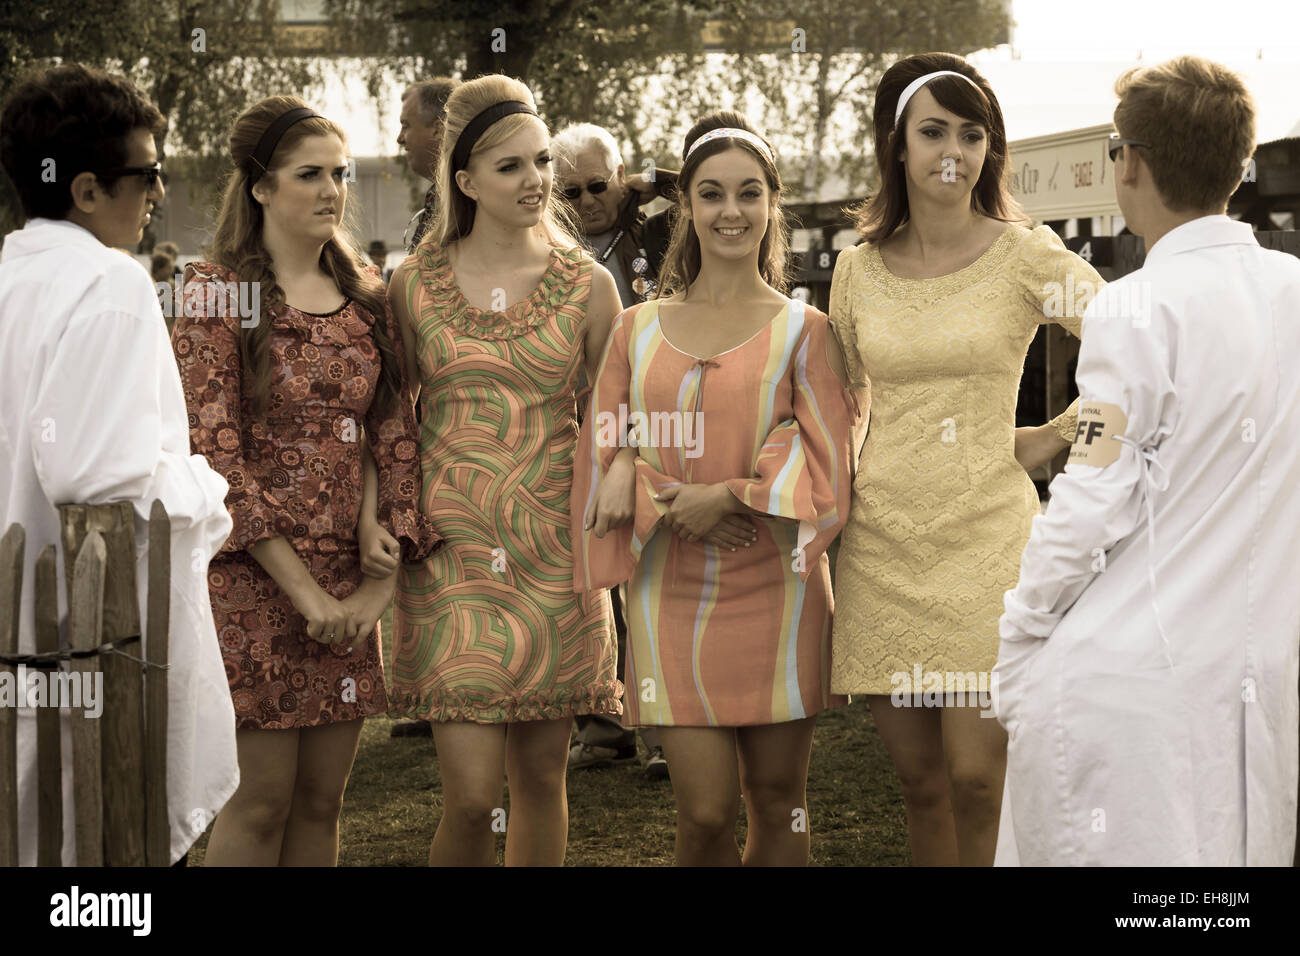 4 junge Frauen im Chat mit Verwalter in 60er Jahre Kleidung. 2014 Goodwood Revival Meeting, Sussex, UK. Stockfoto